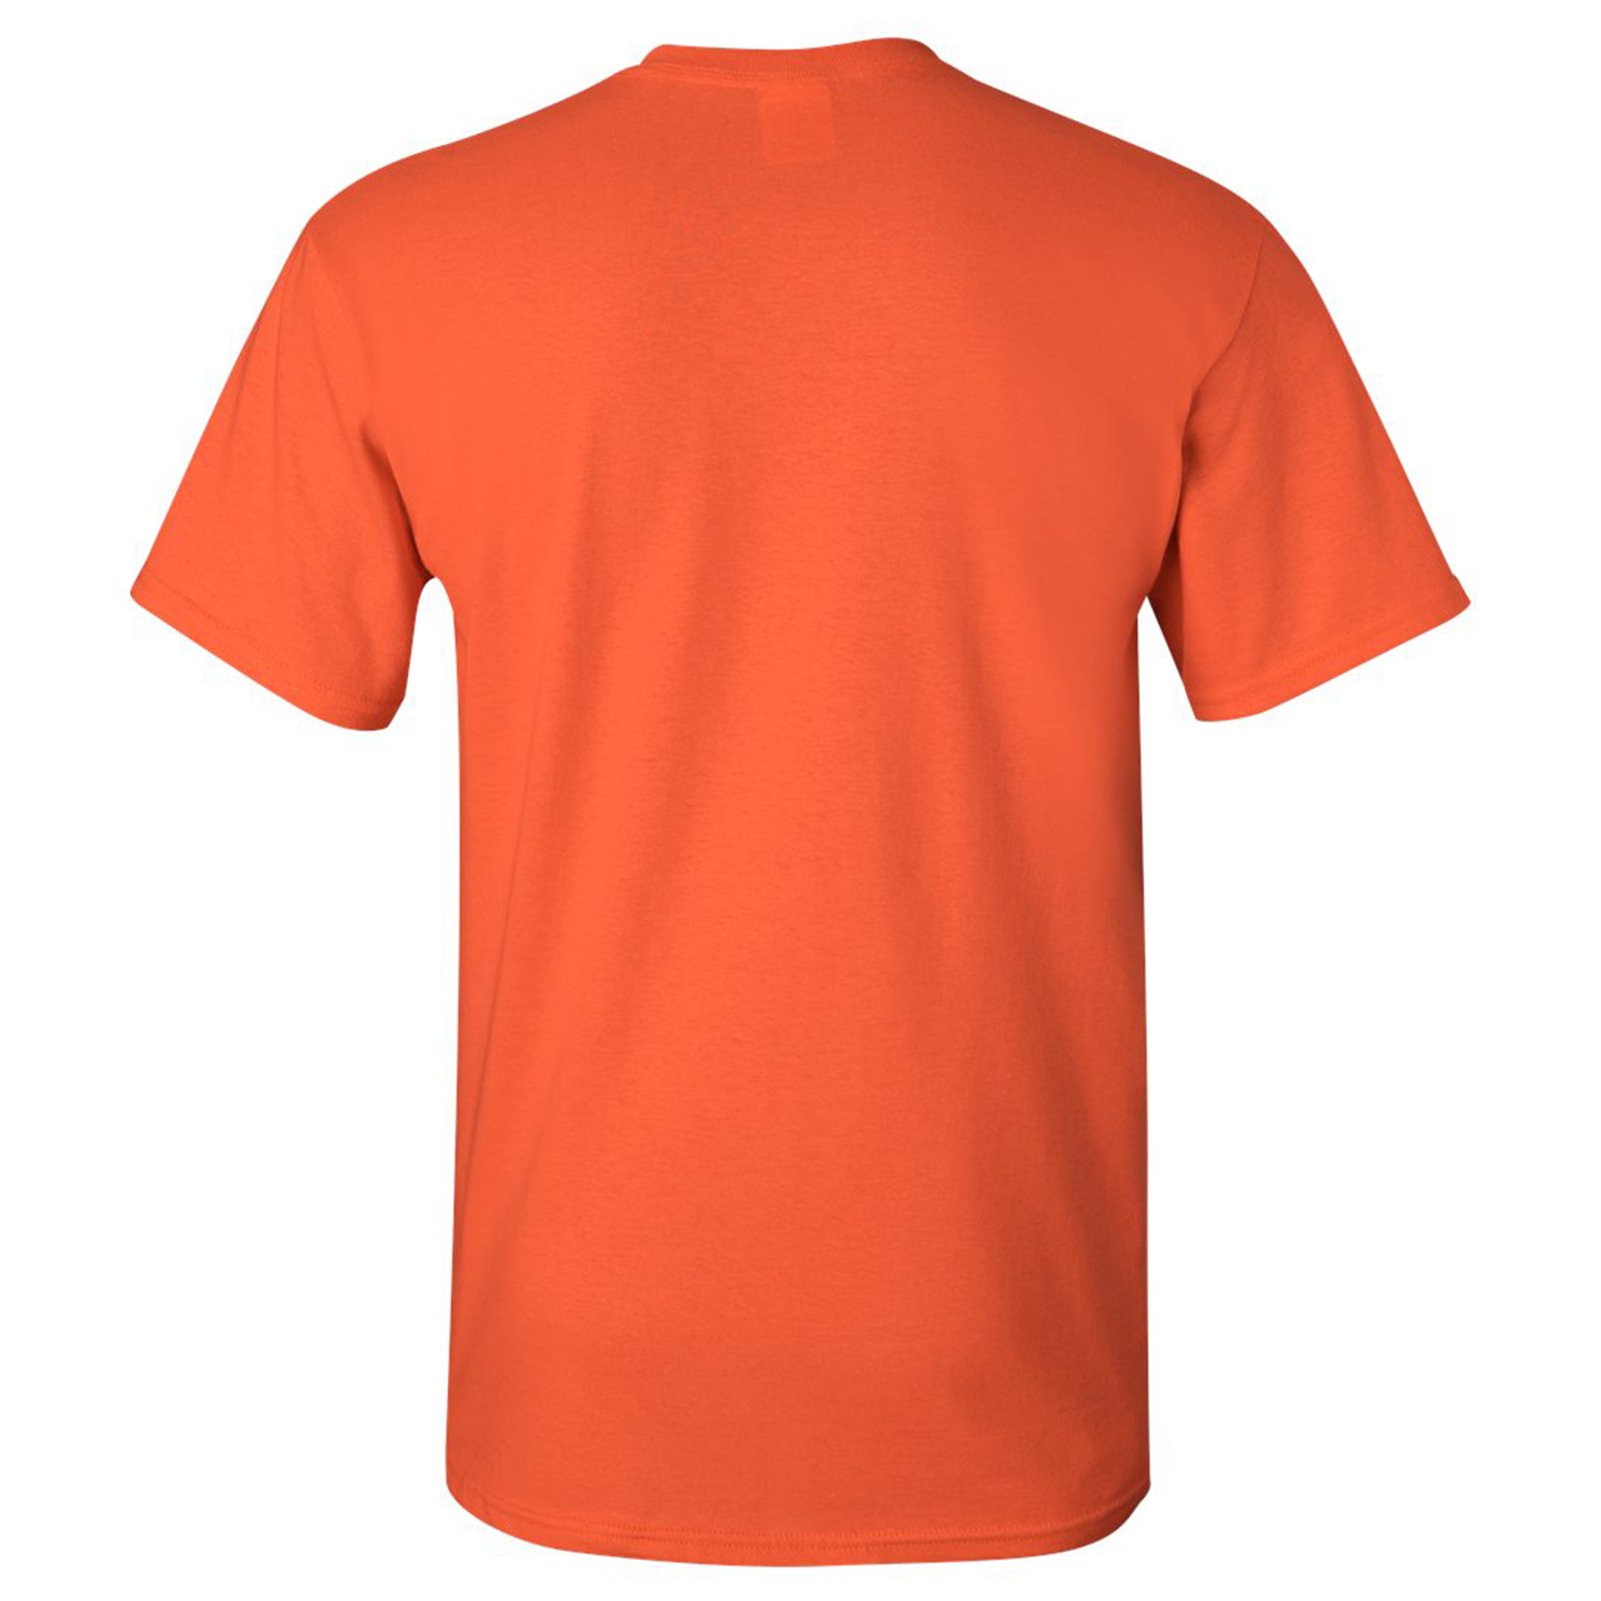 San Francisco Classic Baseball Arch Basic Cotton T-Shirt - Large - Orange - image 2 of 6